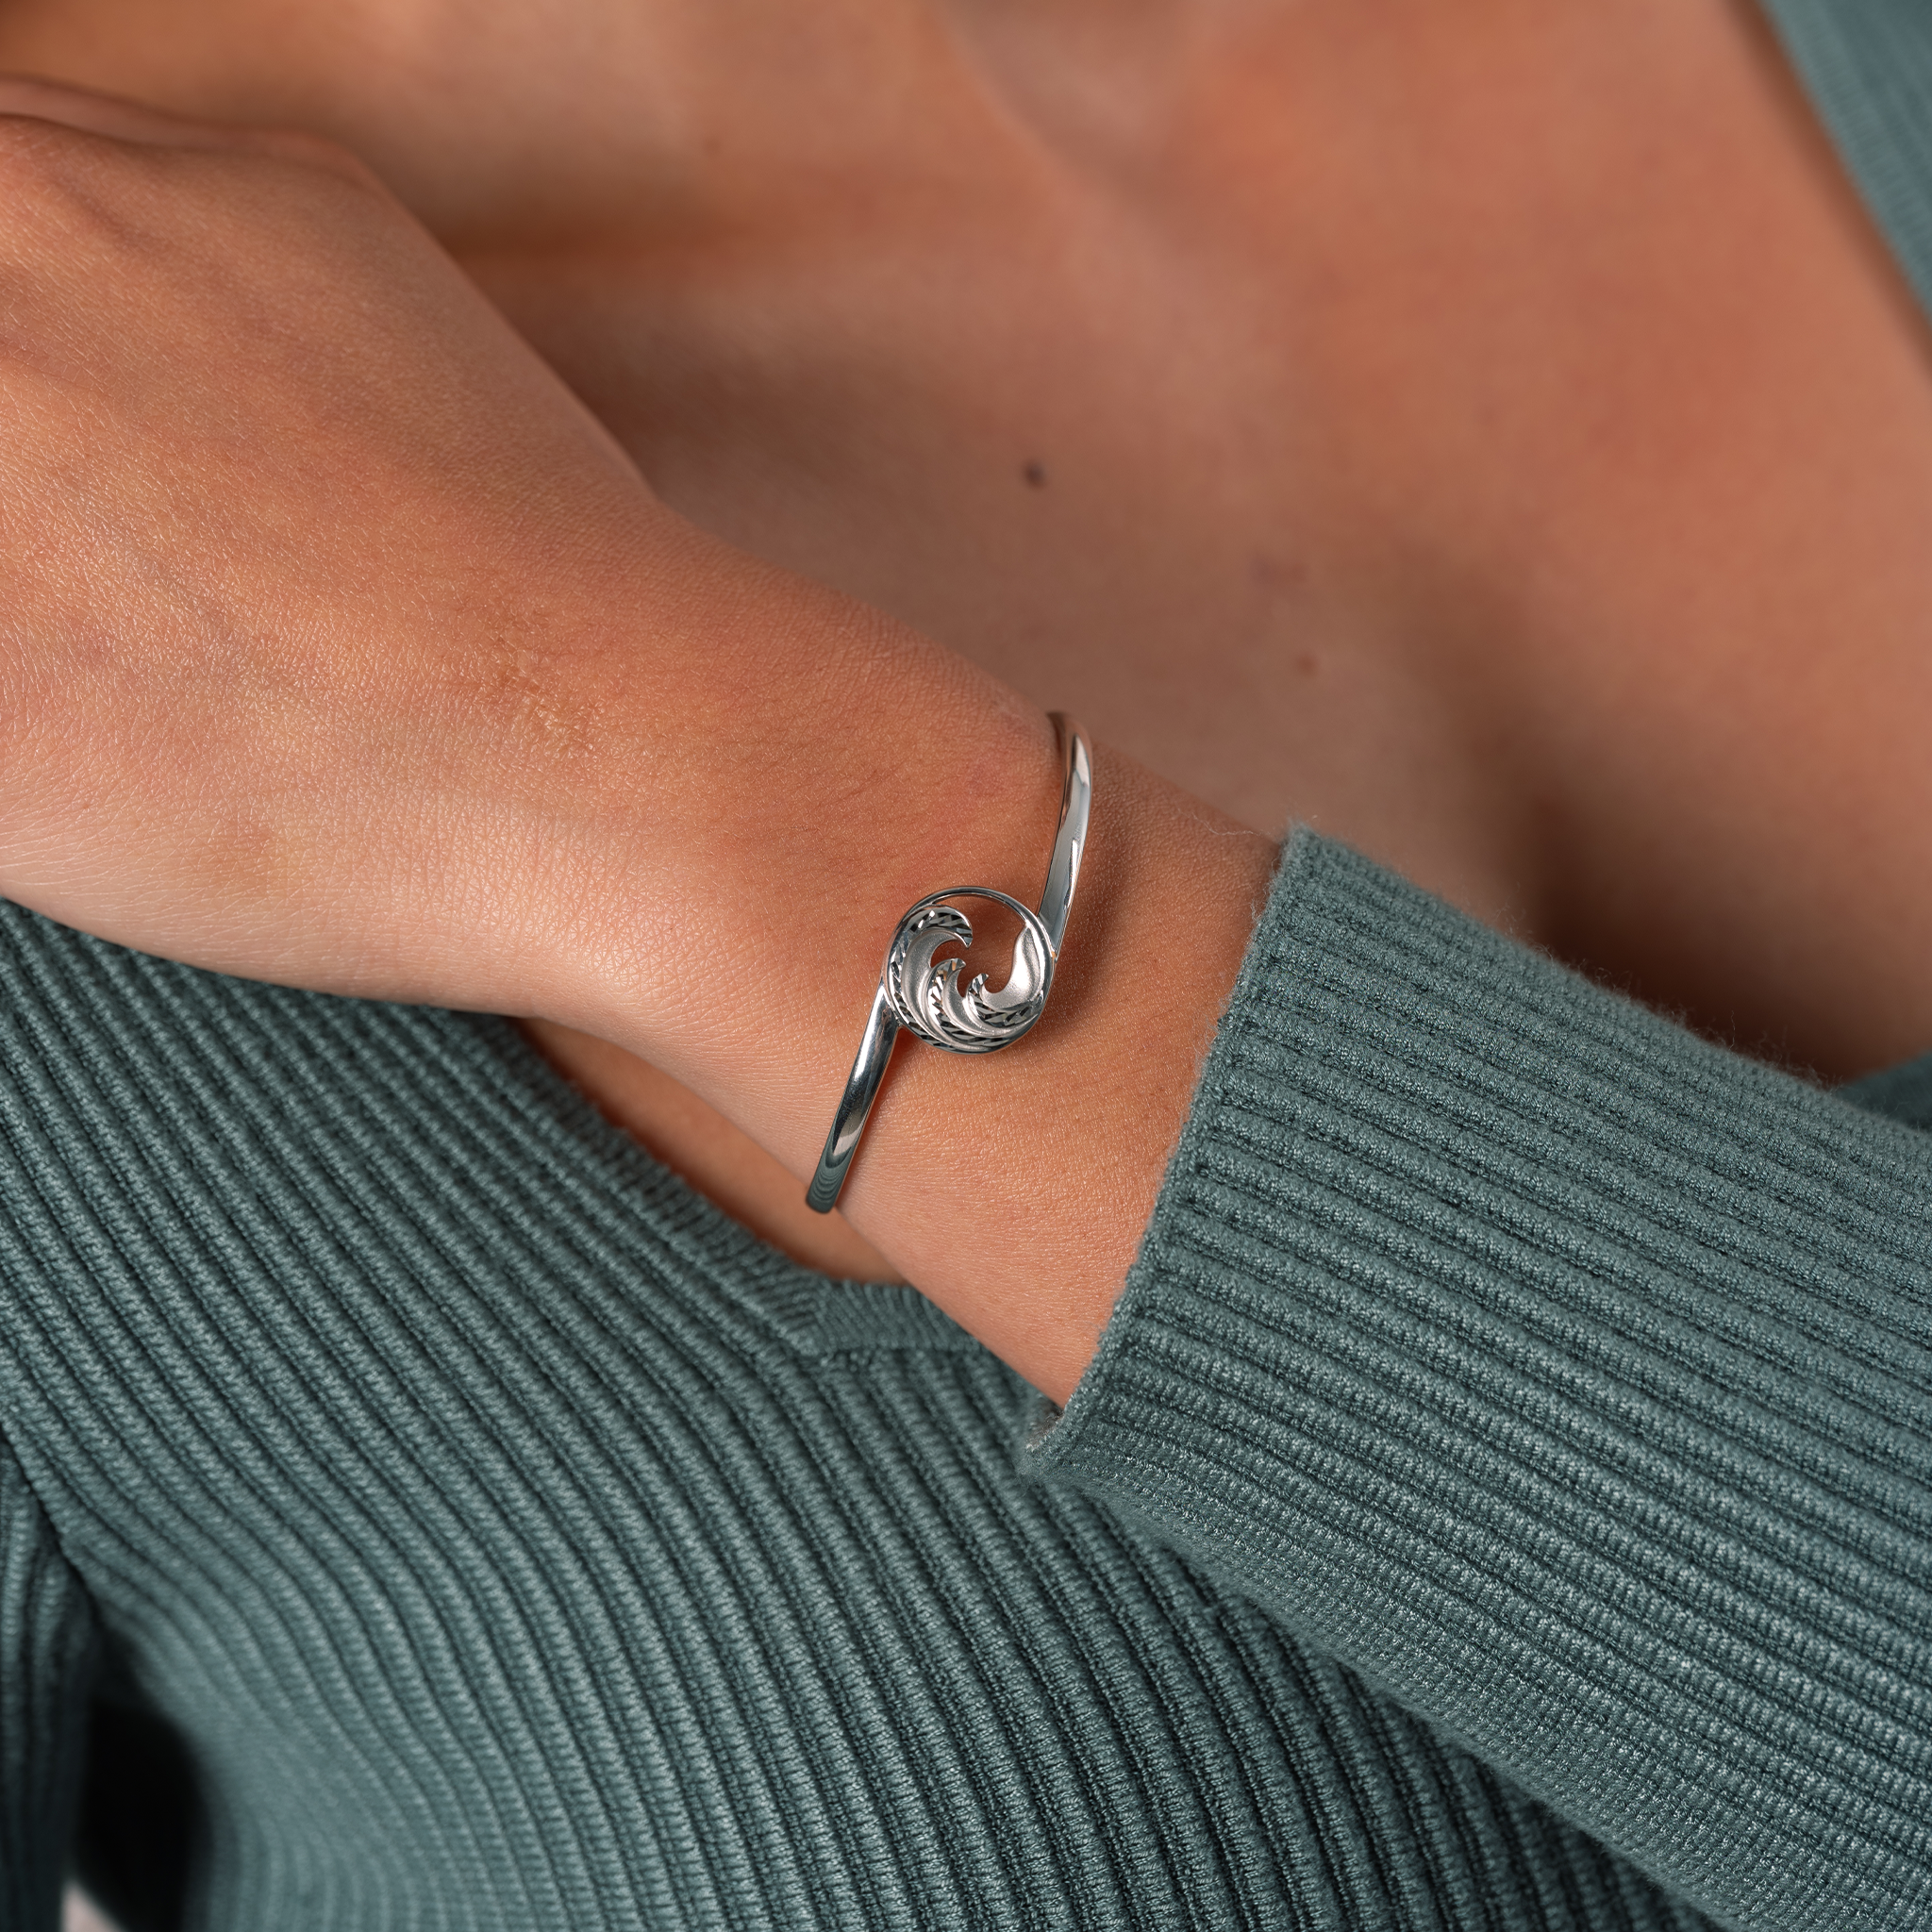 Nalu Cuff Bracelet in Sterling Silver - Size 7.5"